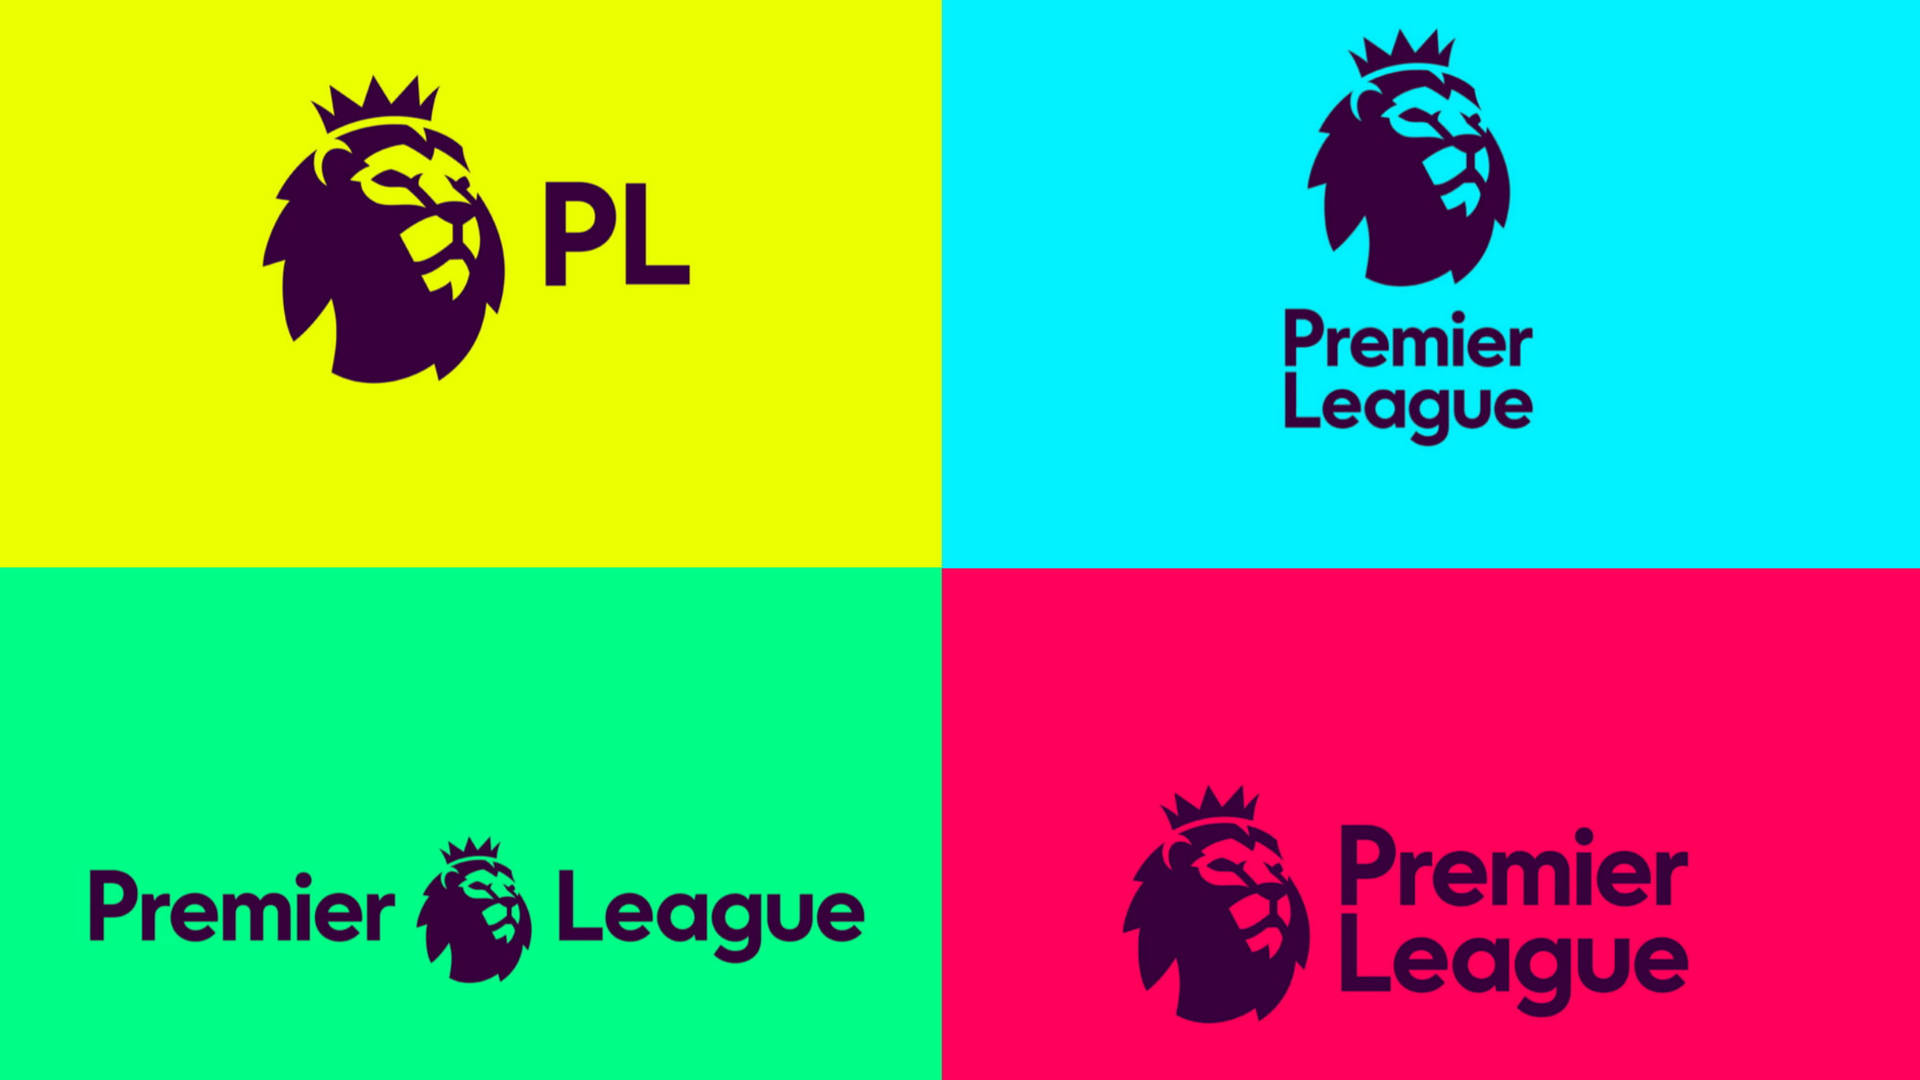 Premier League Logos Background